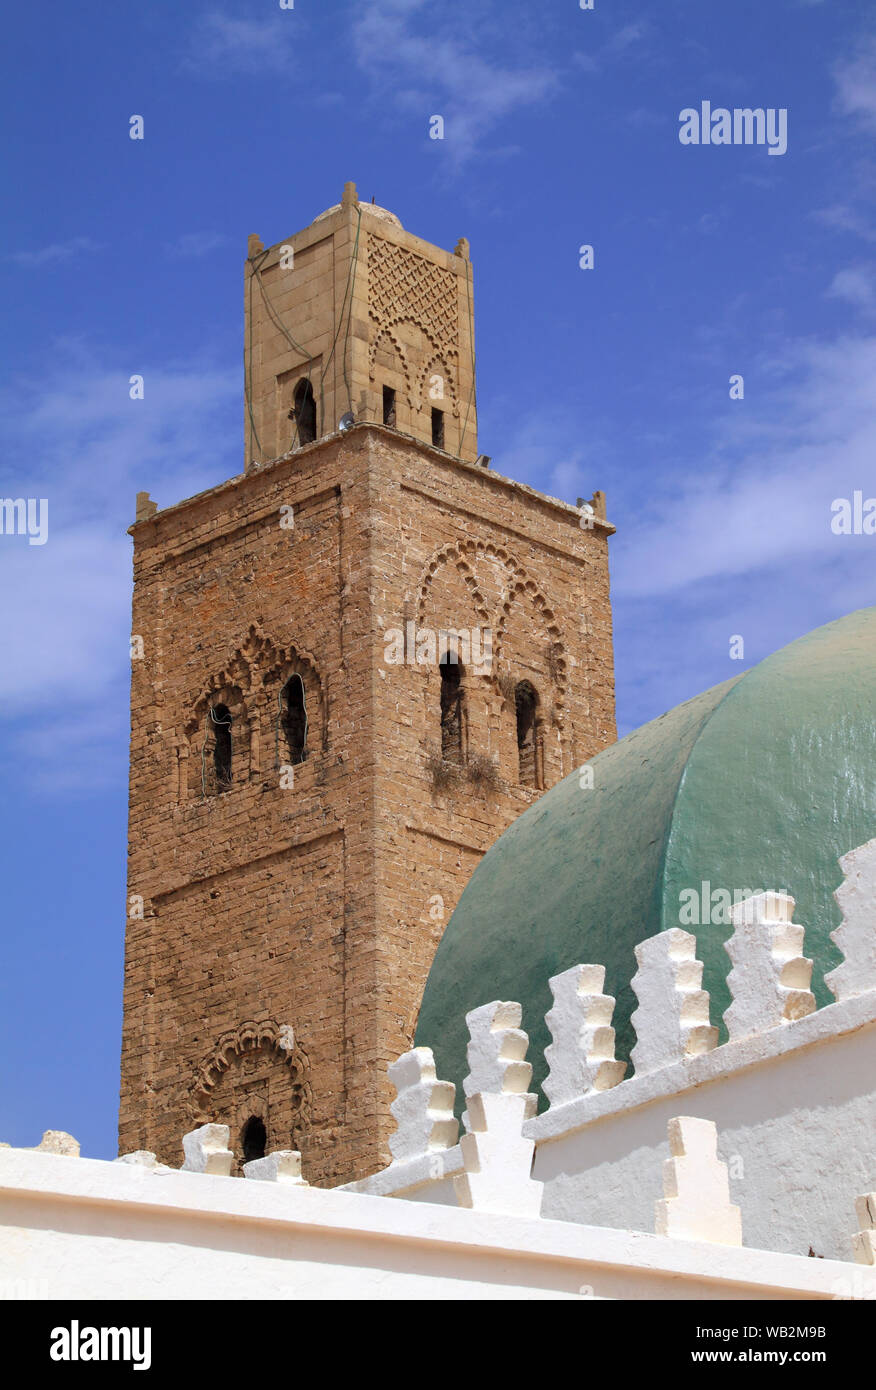 Il Marocco, El Jadida. Bella antica moschea. Pietra di intricati Arabesque minareto contrasta con la moschea e pareti dipinte di bianco. UNESCO - Sito Patrimonio dell'umanità. Foto Stock